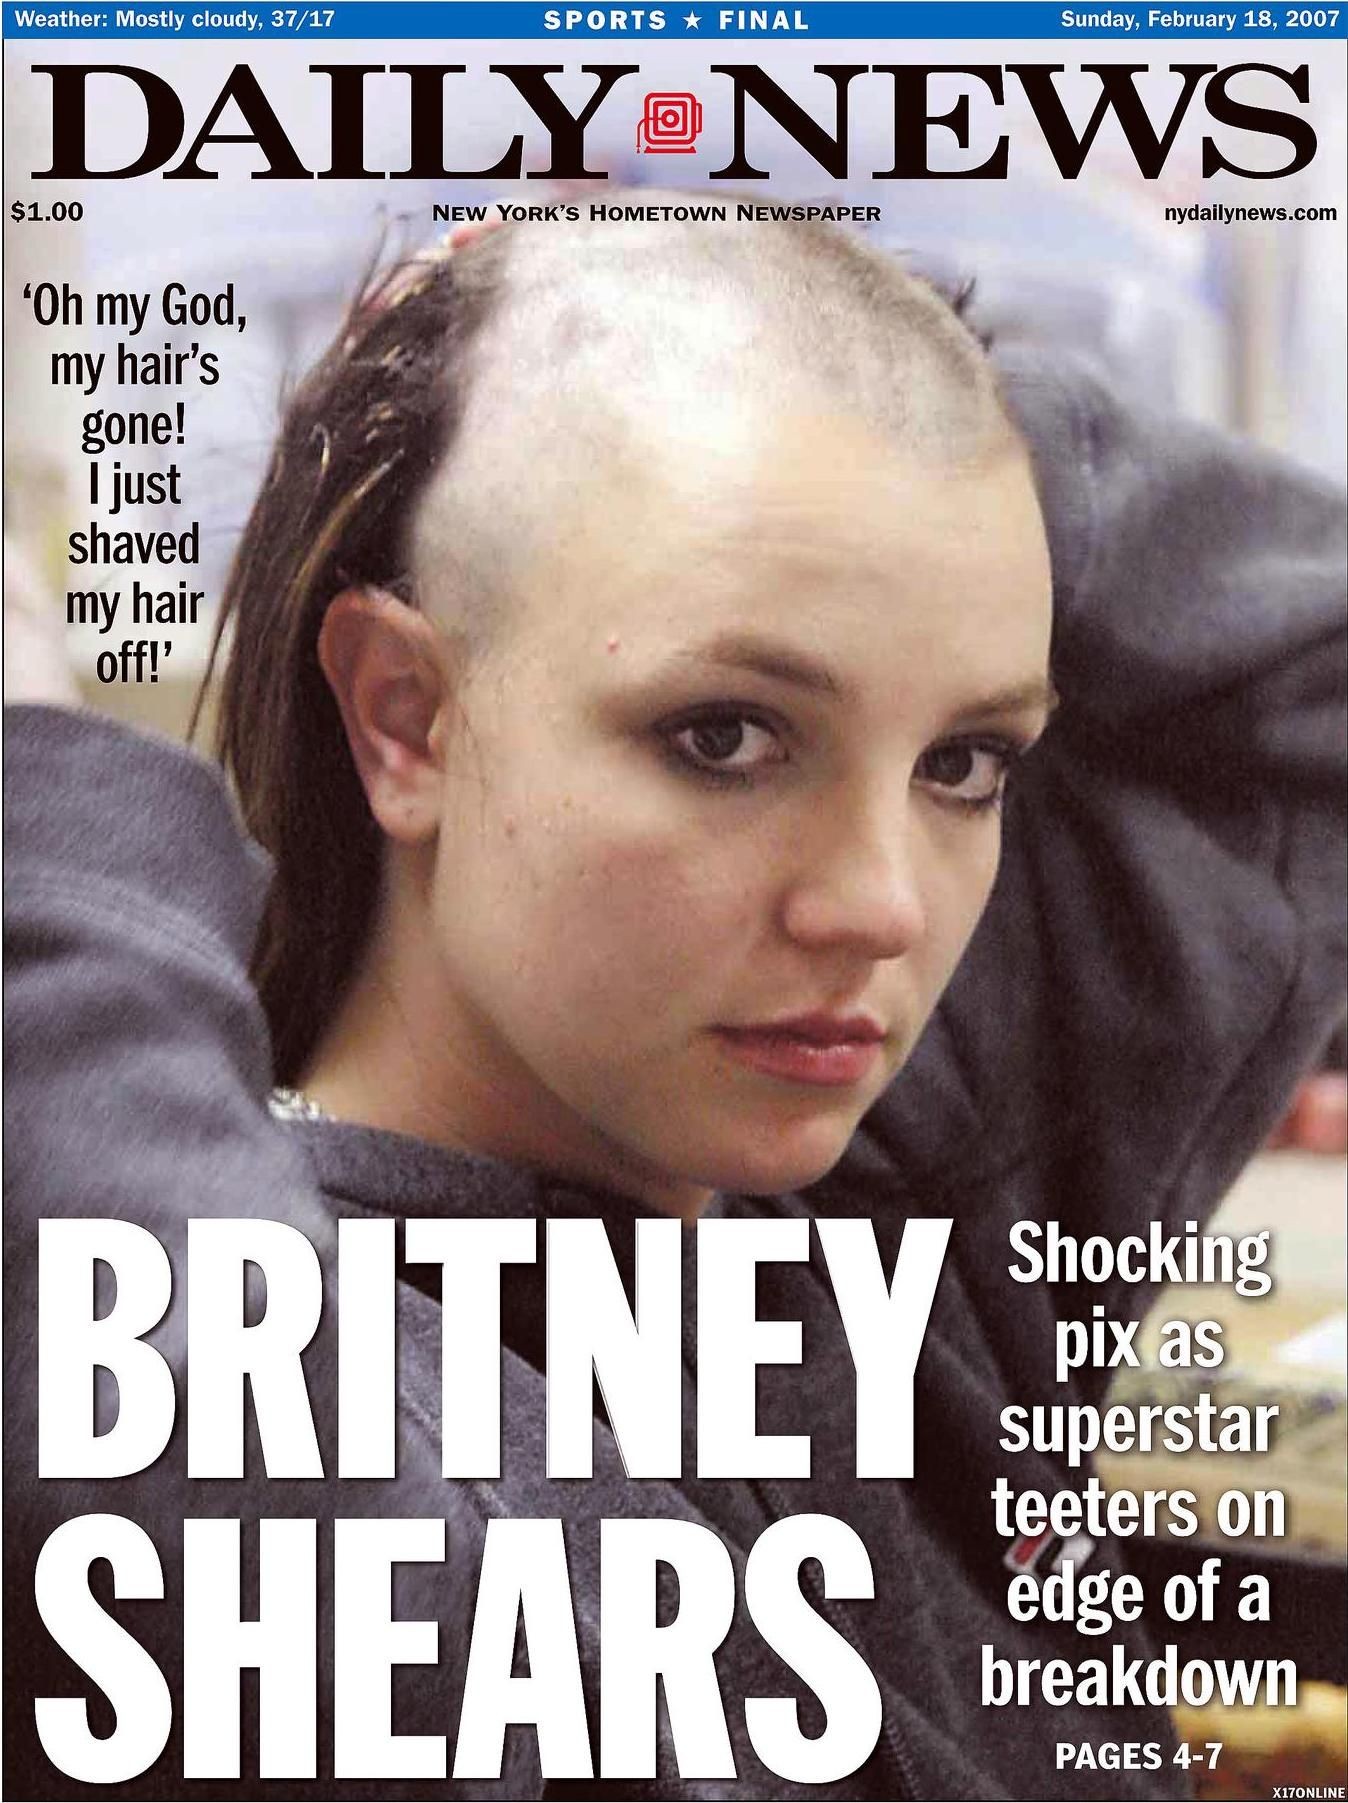 Capa do Daily News de 2007, quando Britney Spears foi fotografada raspando o seu próprio cabelo (Foto: reprodução)